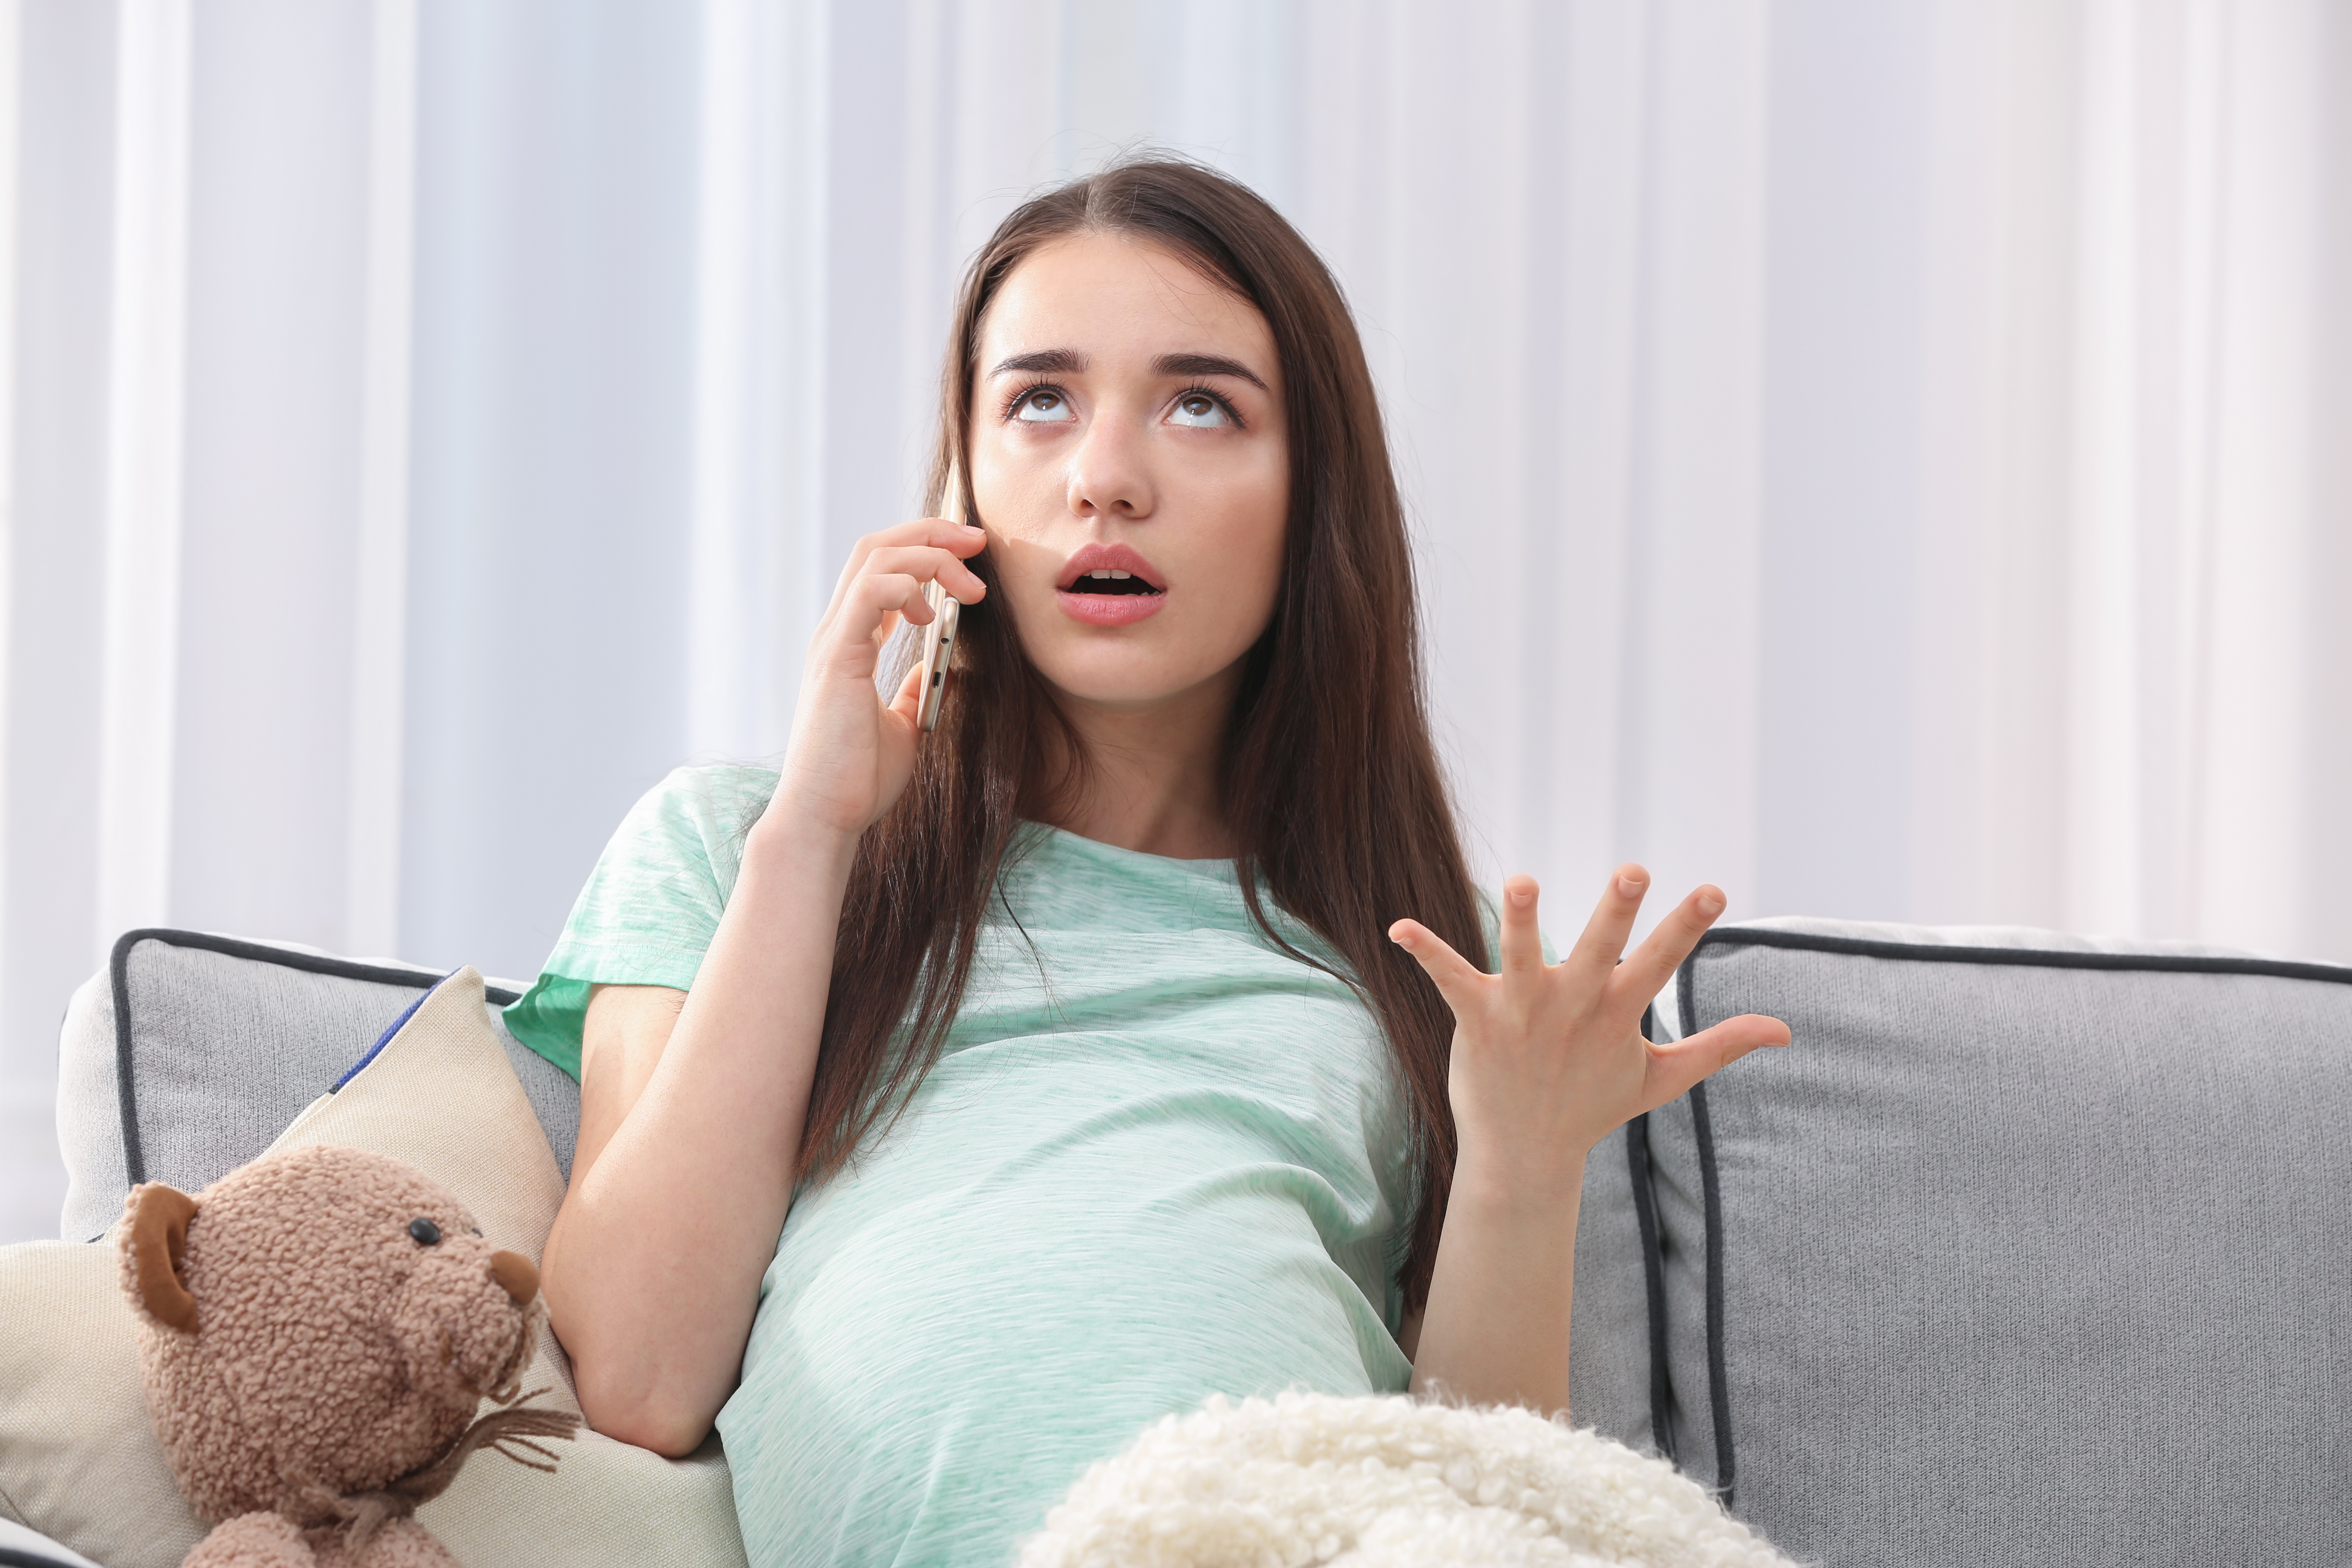 Une femme enceinte qui a l'air ennuyée alors qu'elle est au téléphone | Source : Shutterstock